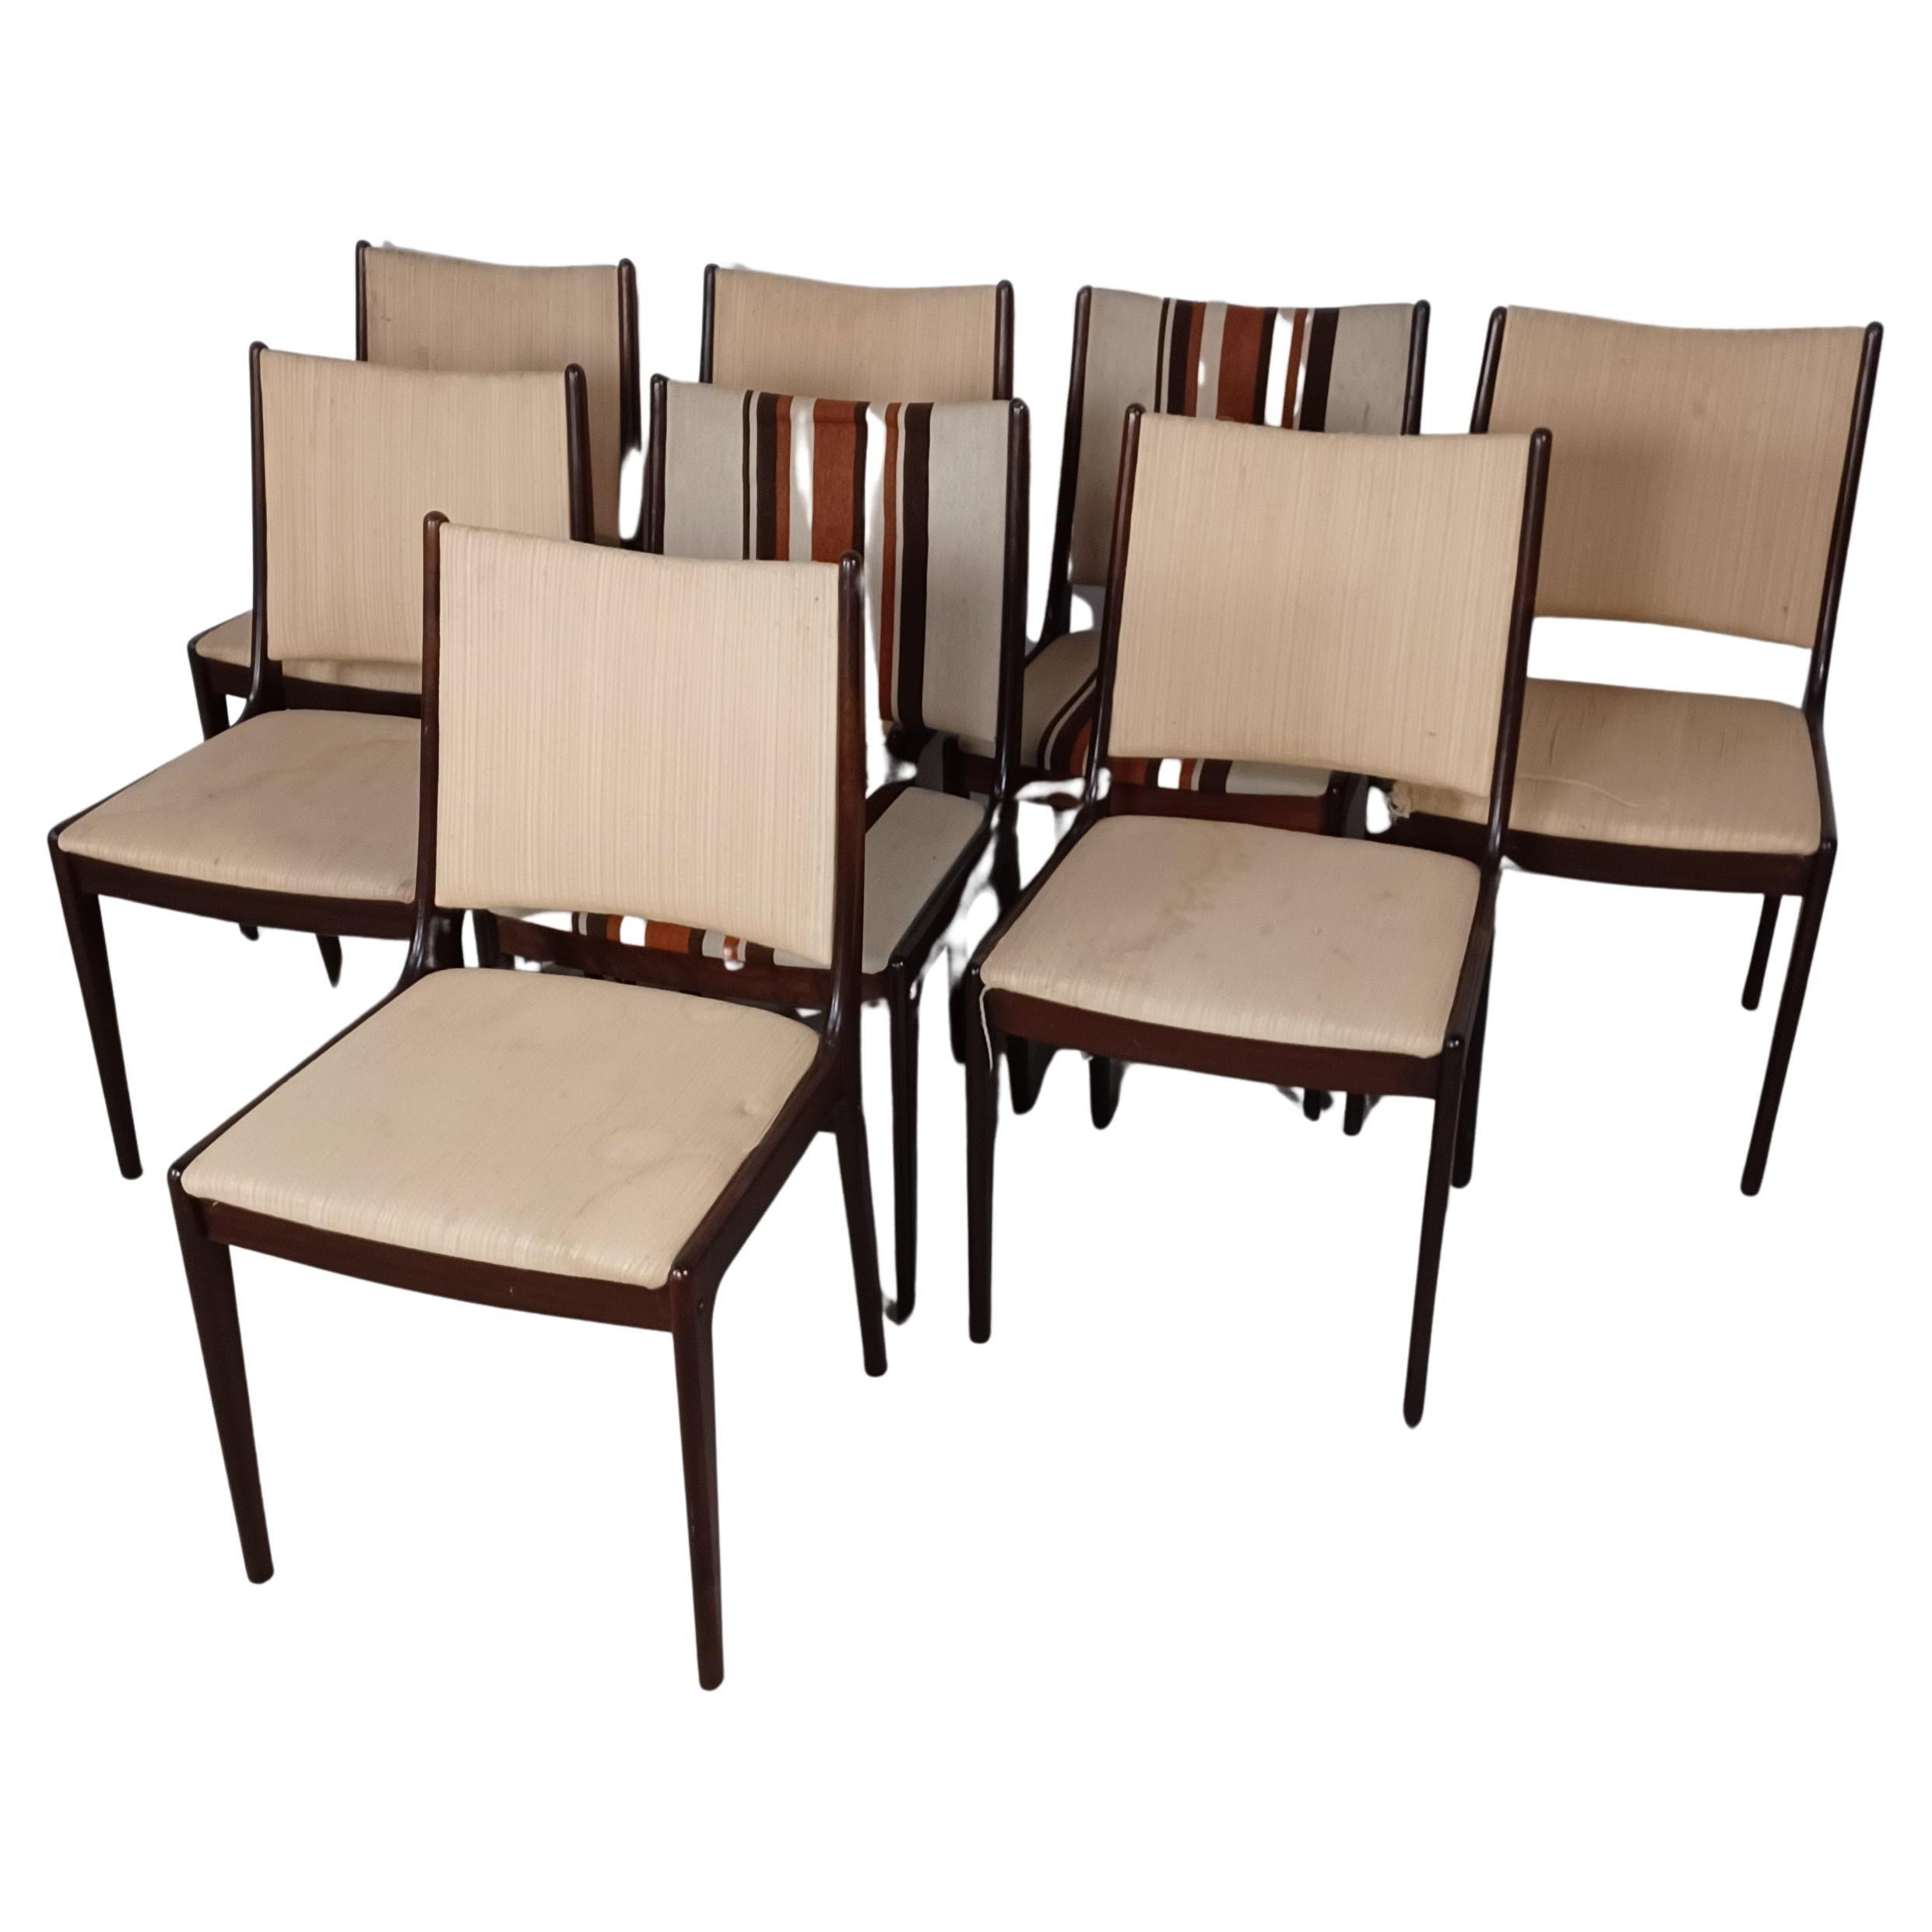 Huit chaises de salle à manger en acajou de Johannes Andersen restaurées, dont le rembourrage est inclus